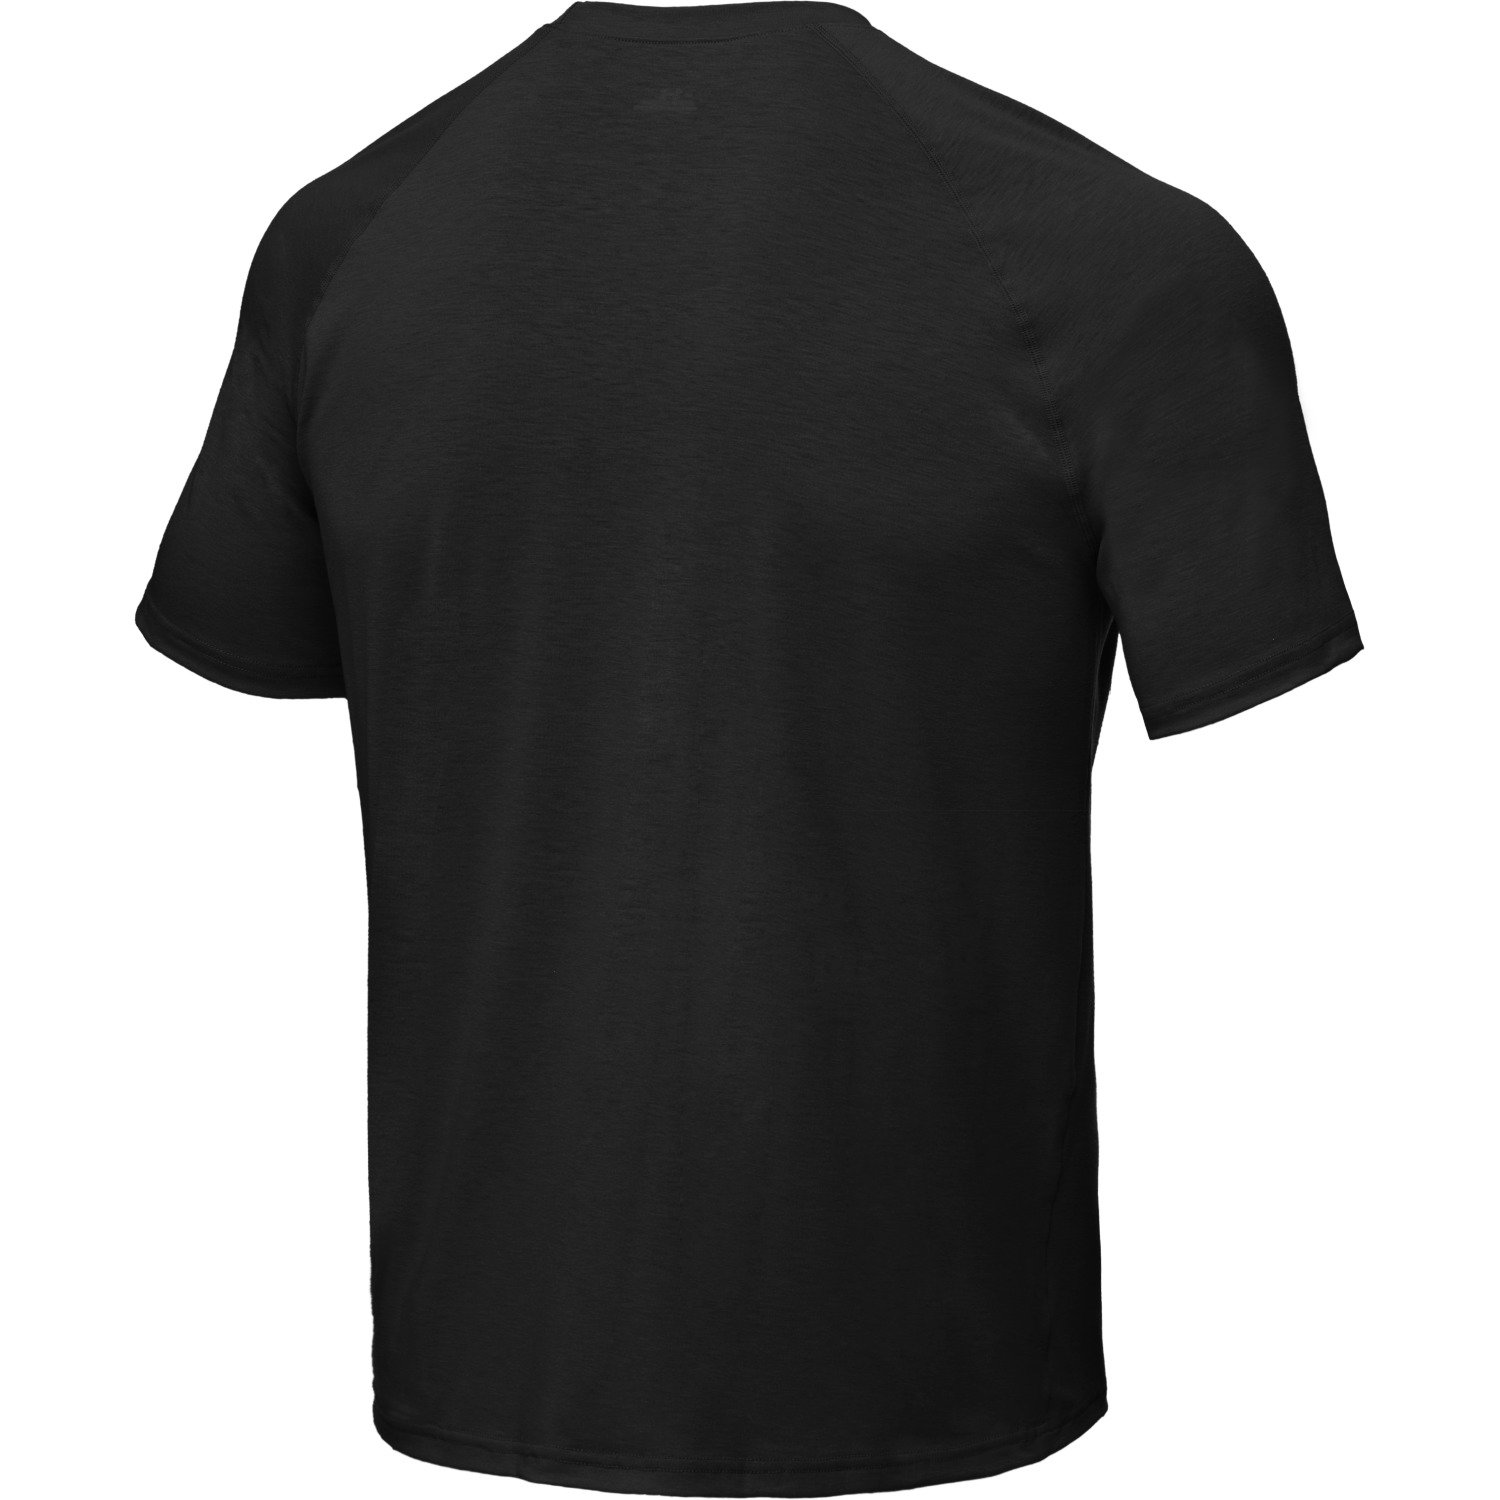 Under Armour Men's UA Tactical Tech Short Sleeve T-shirt | Academy